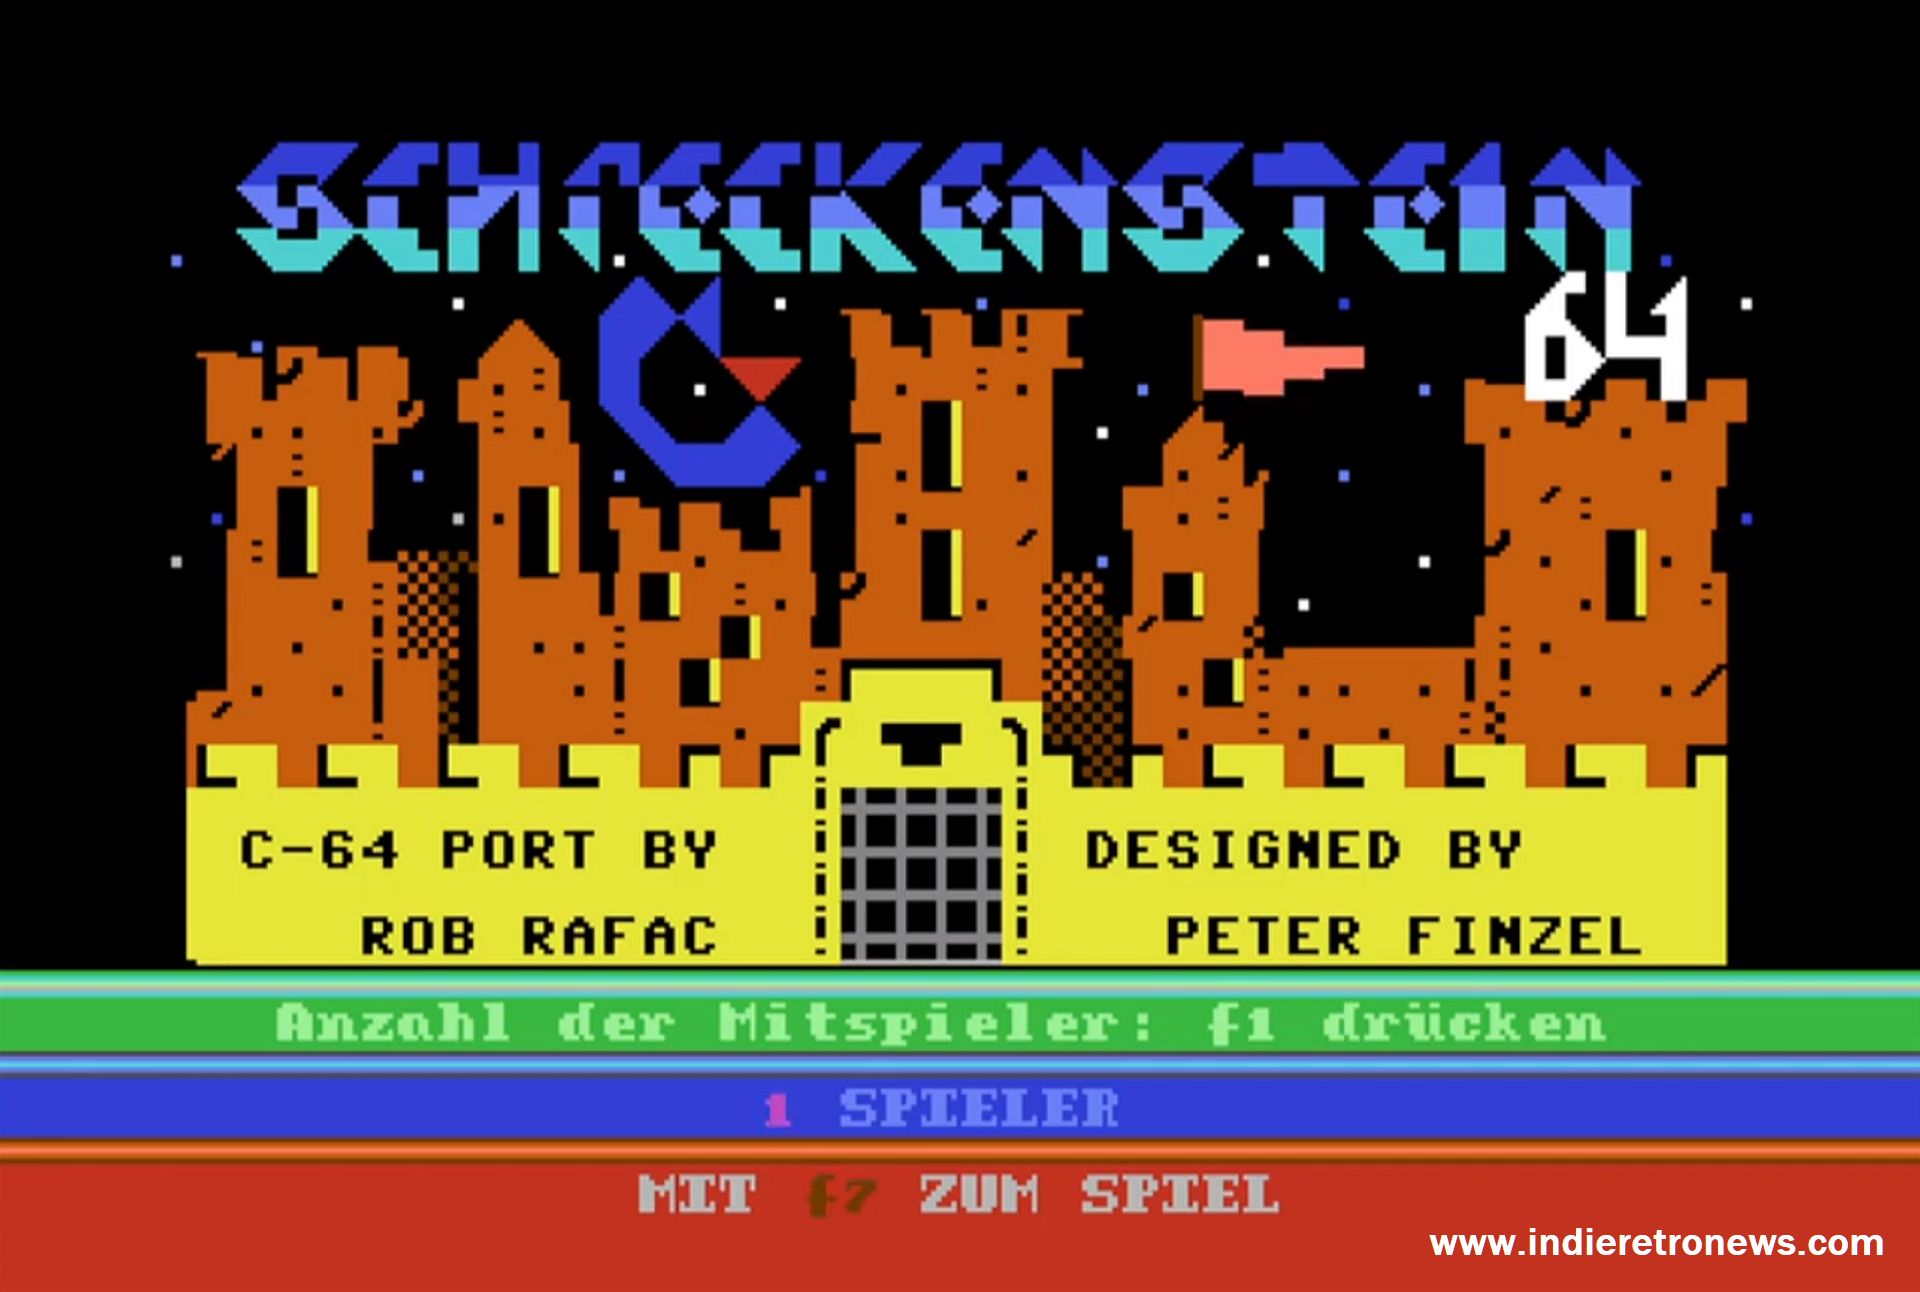 Schreckenstein pro C64